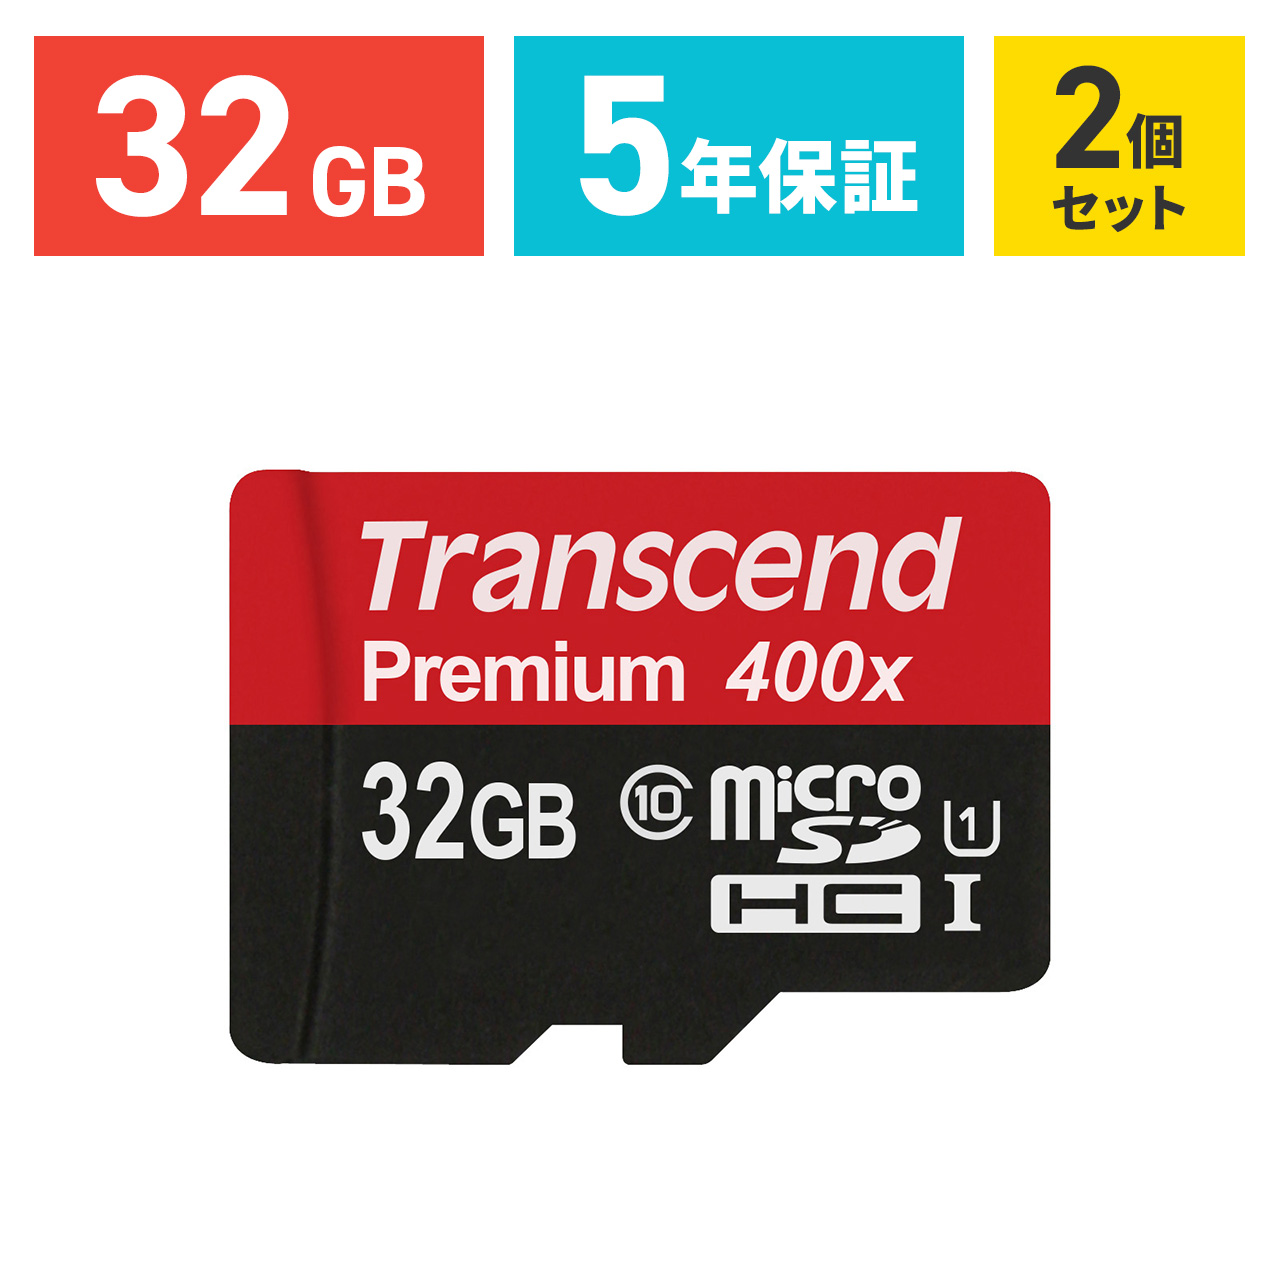 TS32GUSDCU1 ネコポス専用 送料無料対象品 まとめ割 2個セット Transcend microSDカード 32GB Class10 5年保証 microSDHC スマホ セール品 クラス10 激安通販販売 UHS-I マイクロSD 卒業 SD 入学